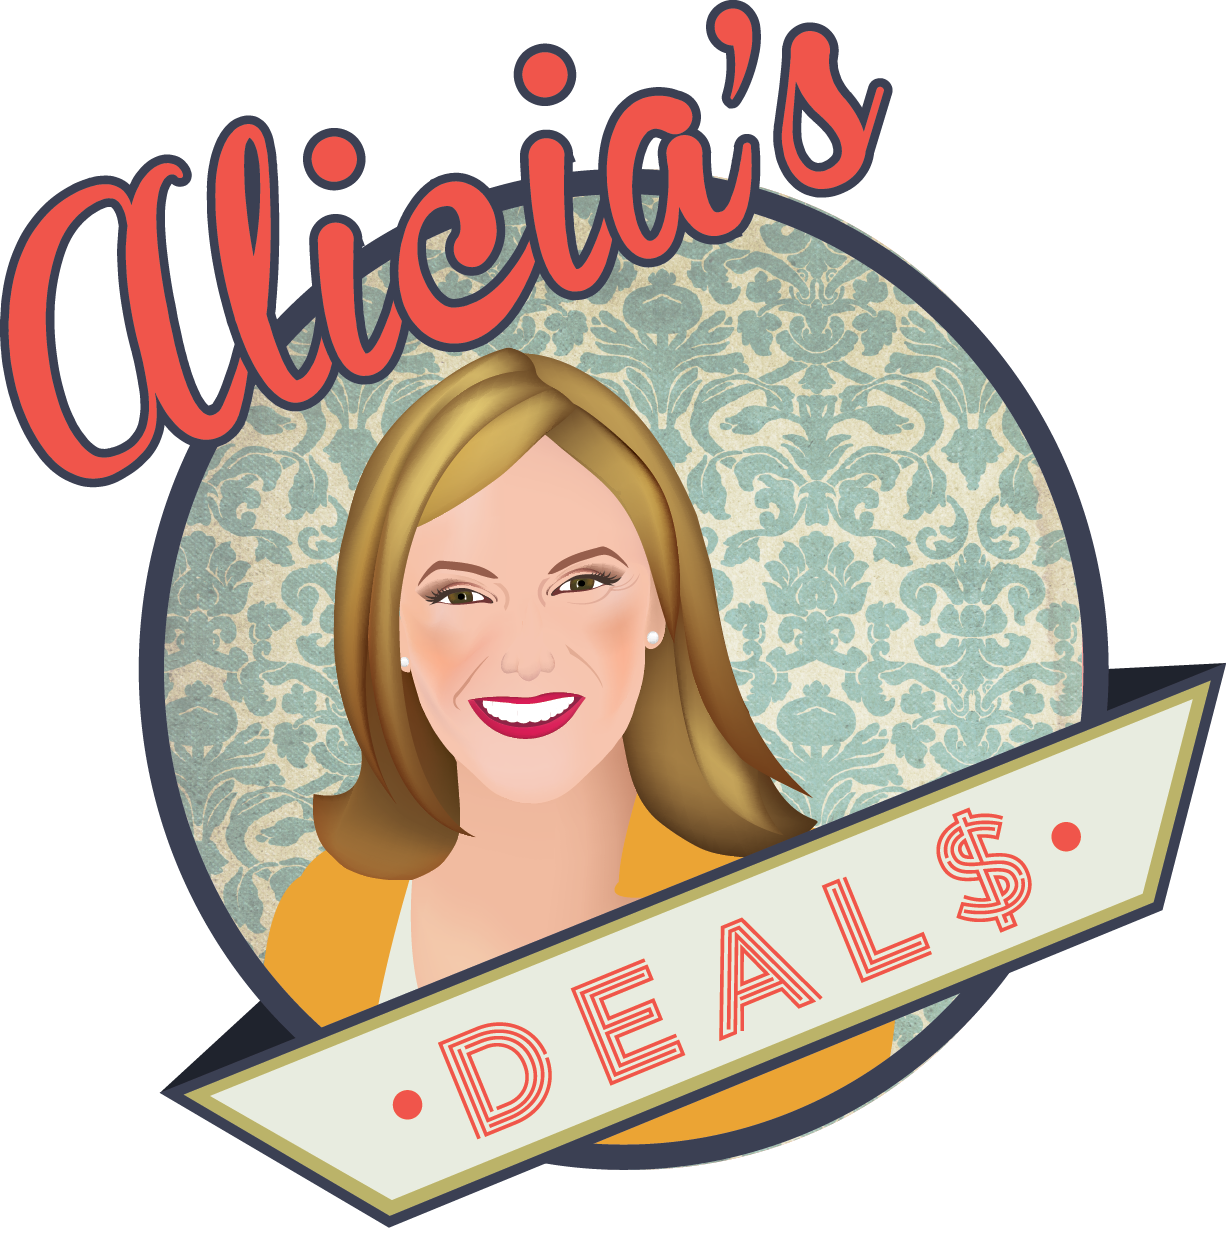 Alicia's Deals